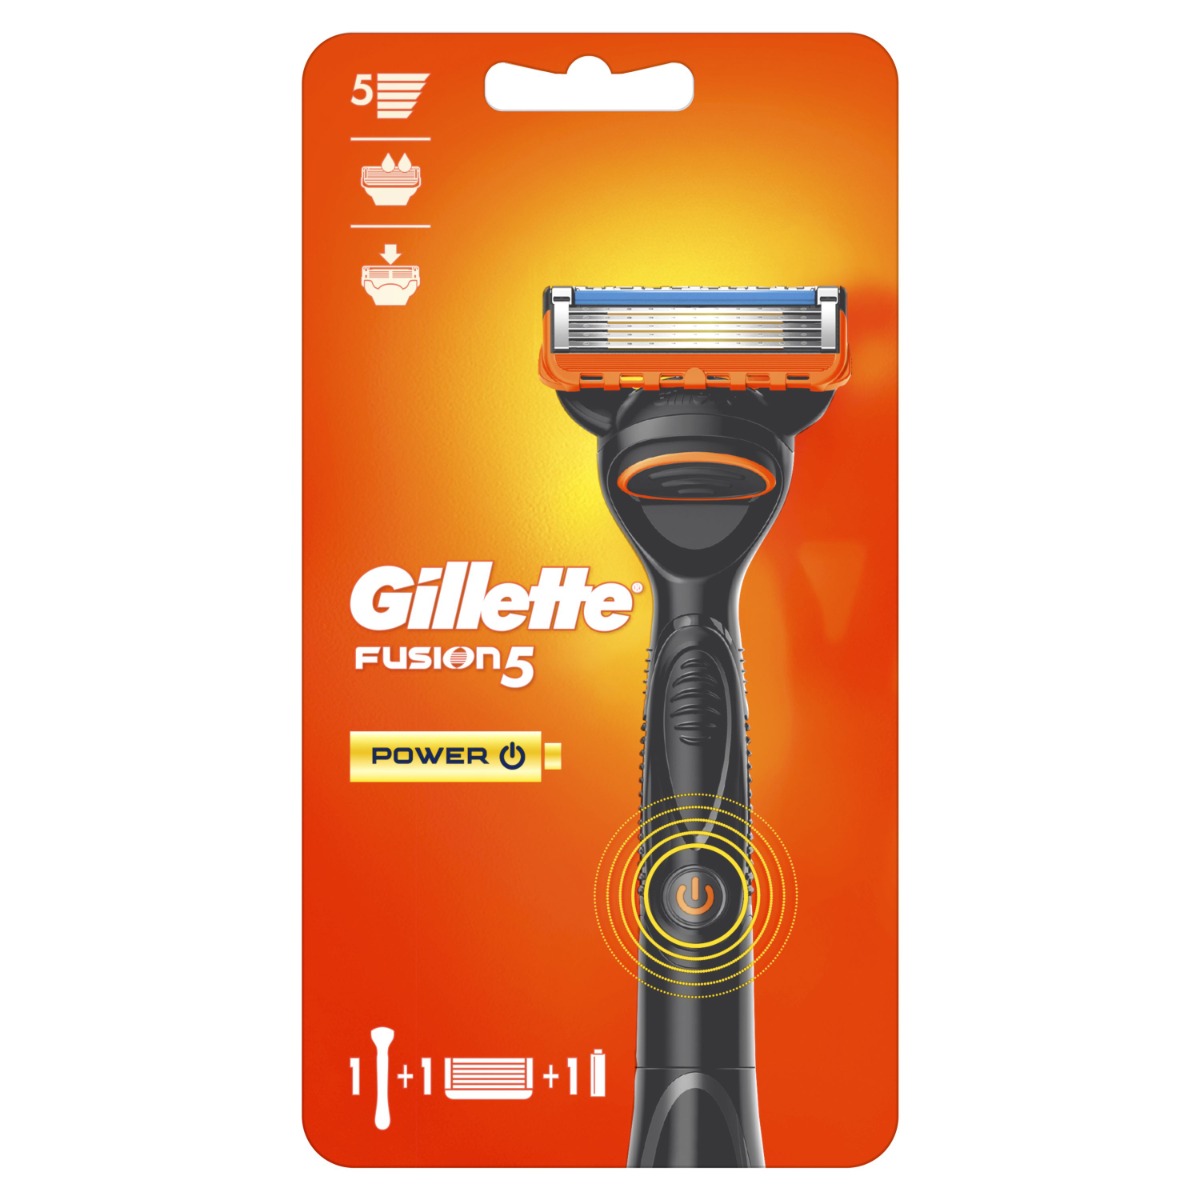 Gillette Fusion5 Power pánský holicí strojek + 1 hlavice Gillette